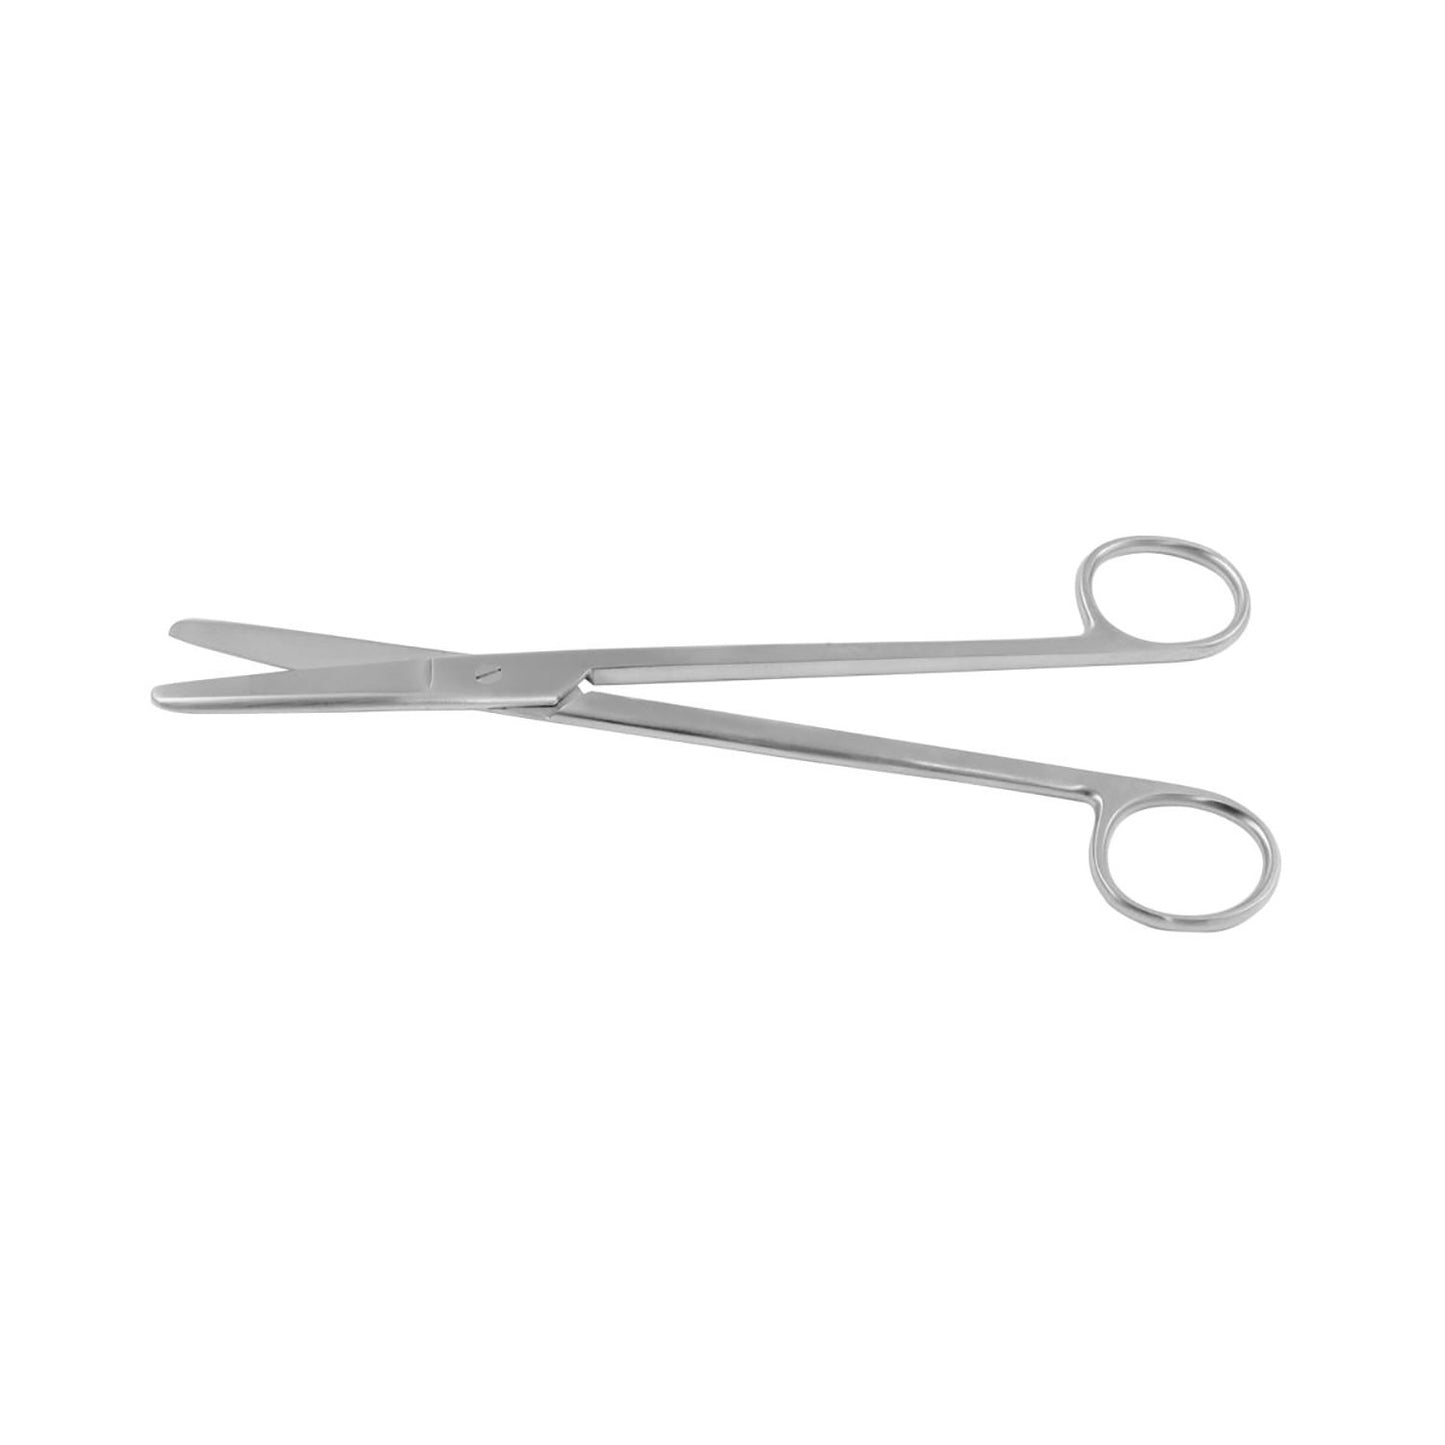 Sims Uterine Scissors